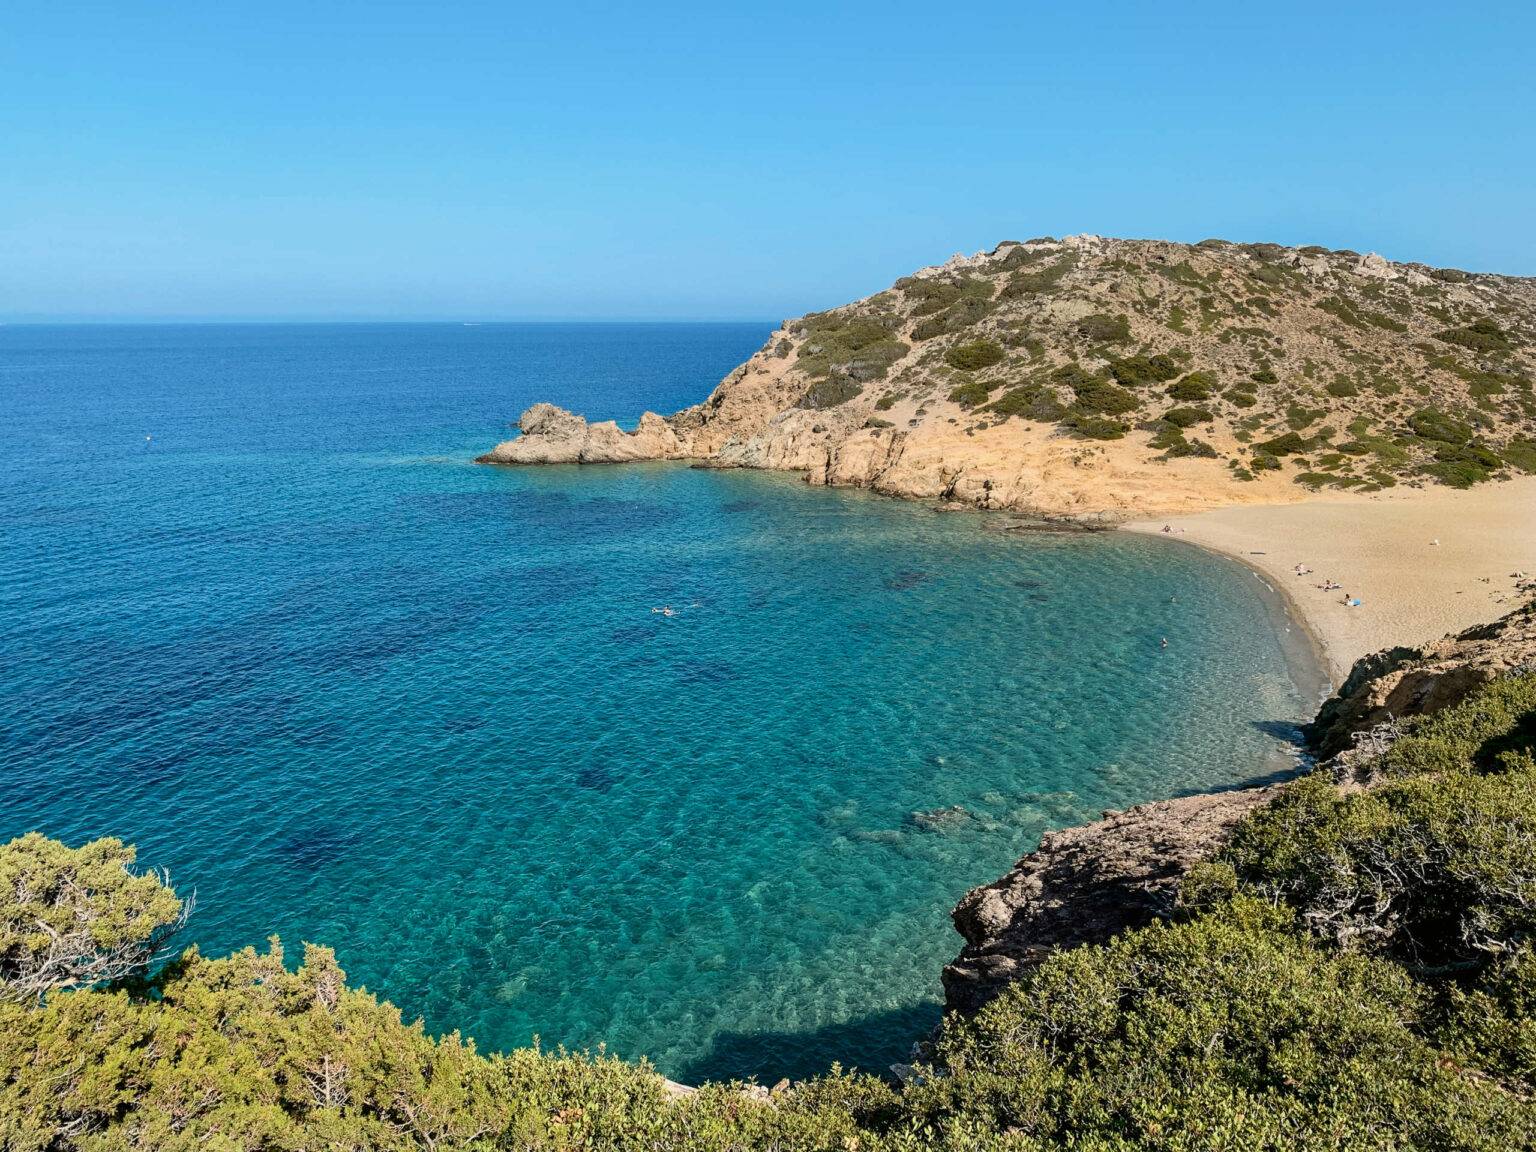 Blick von einer Landzunge aus hinunter auf türkisblaues Meer und den idyllischen Psili Ammos Beach auf Kreta.